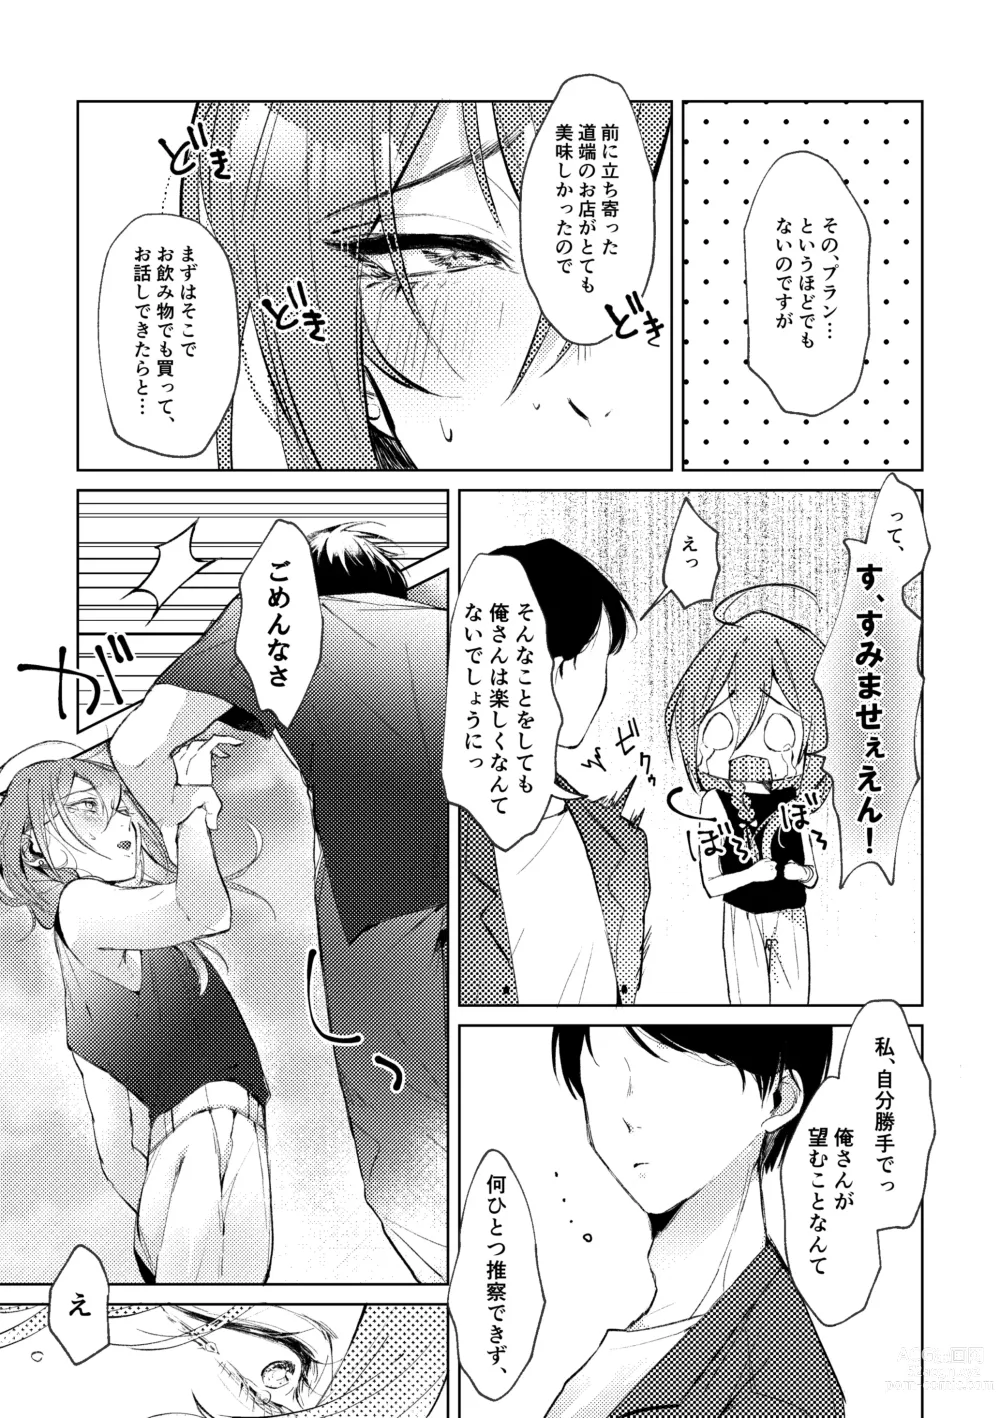 Page 8 of doujinshi Ore no Kanojo no Mayoi-kun.